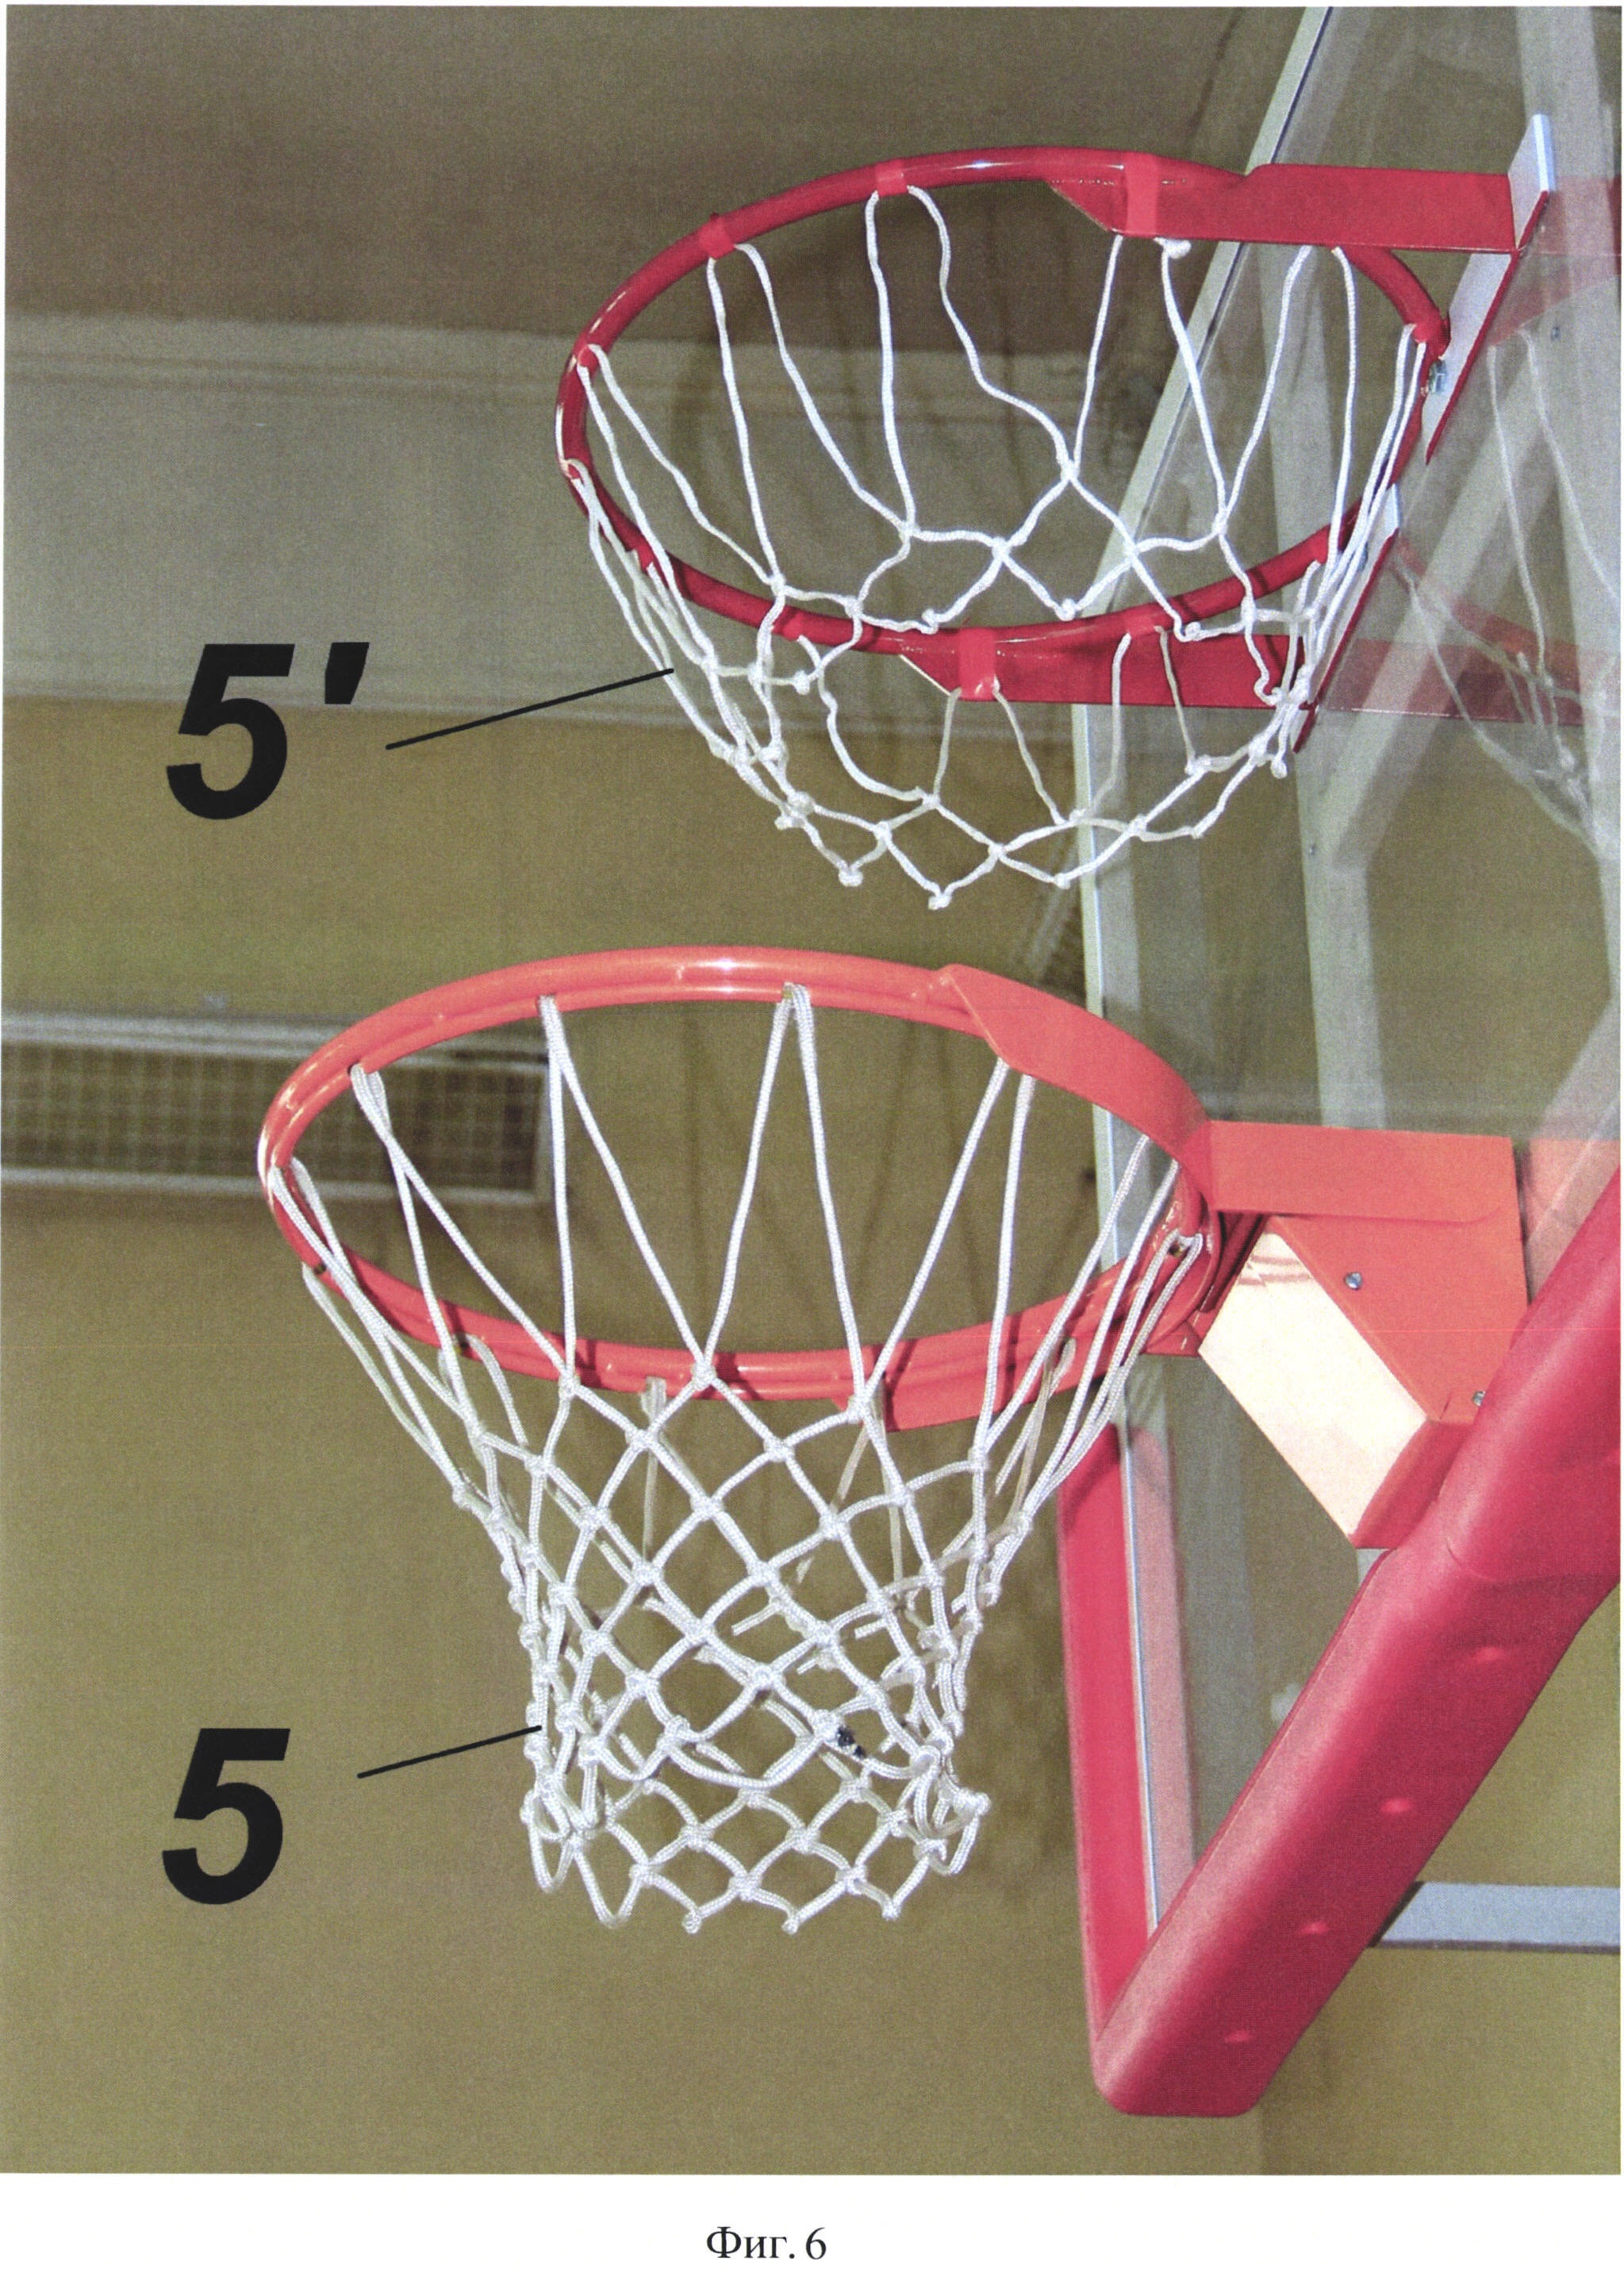 Русский баскетбол - модификация спортивной игры баскетбол